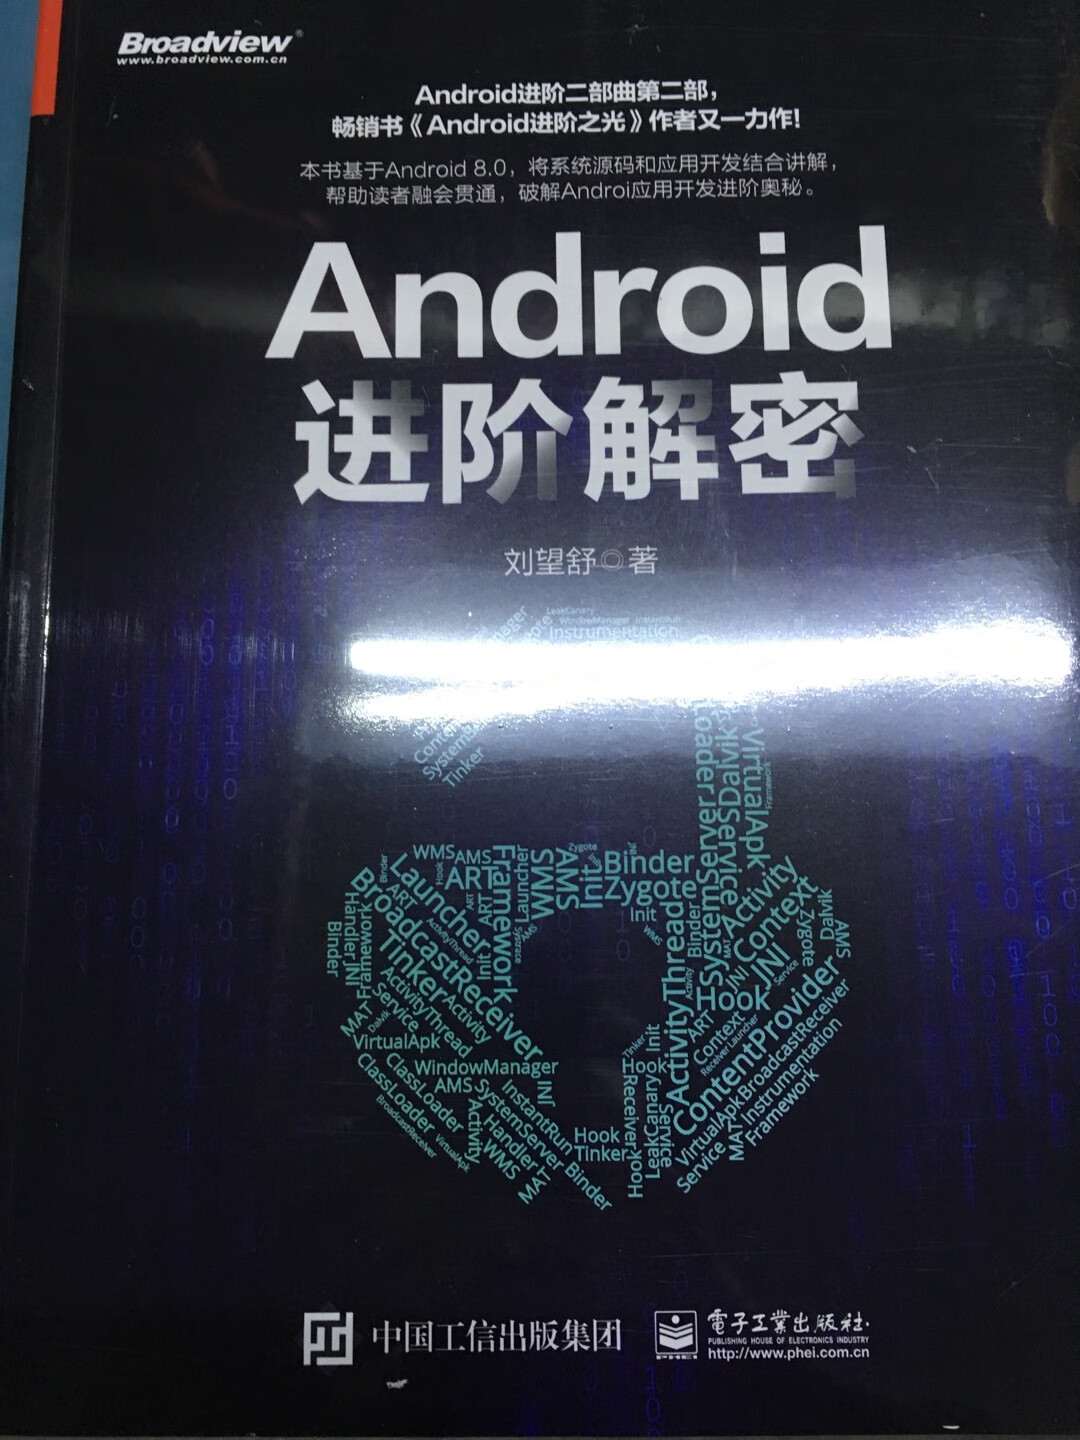 还可以吧，就是为什么封面那里的android少了一个字母d？是印刷的问题吗？